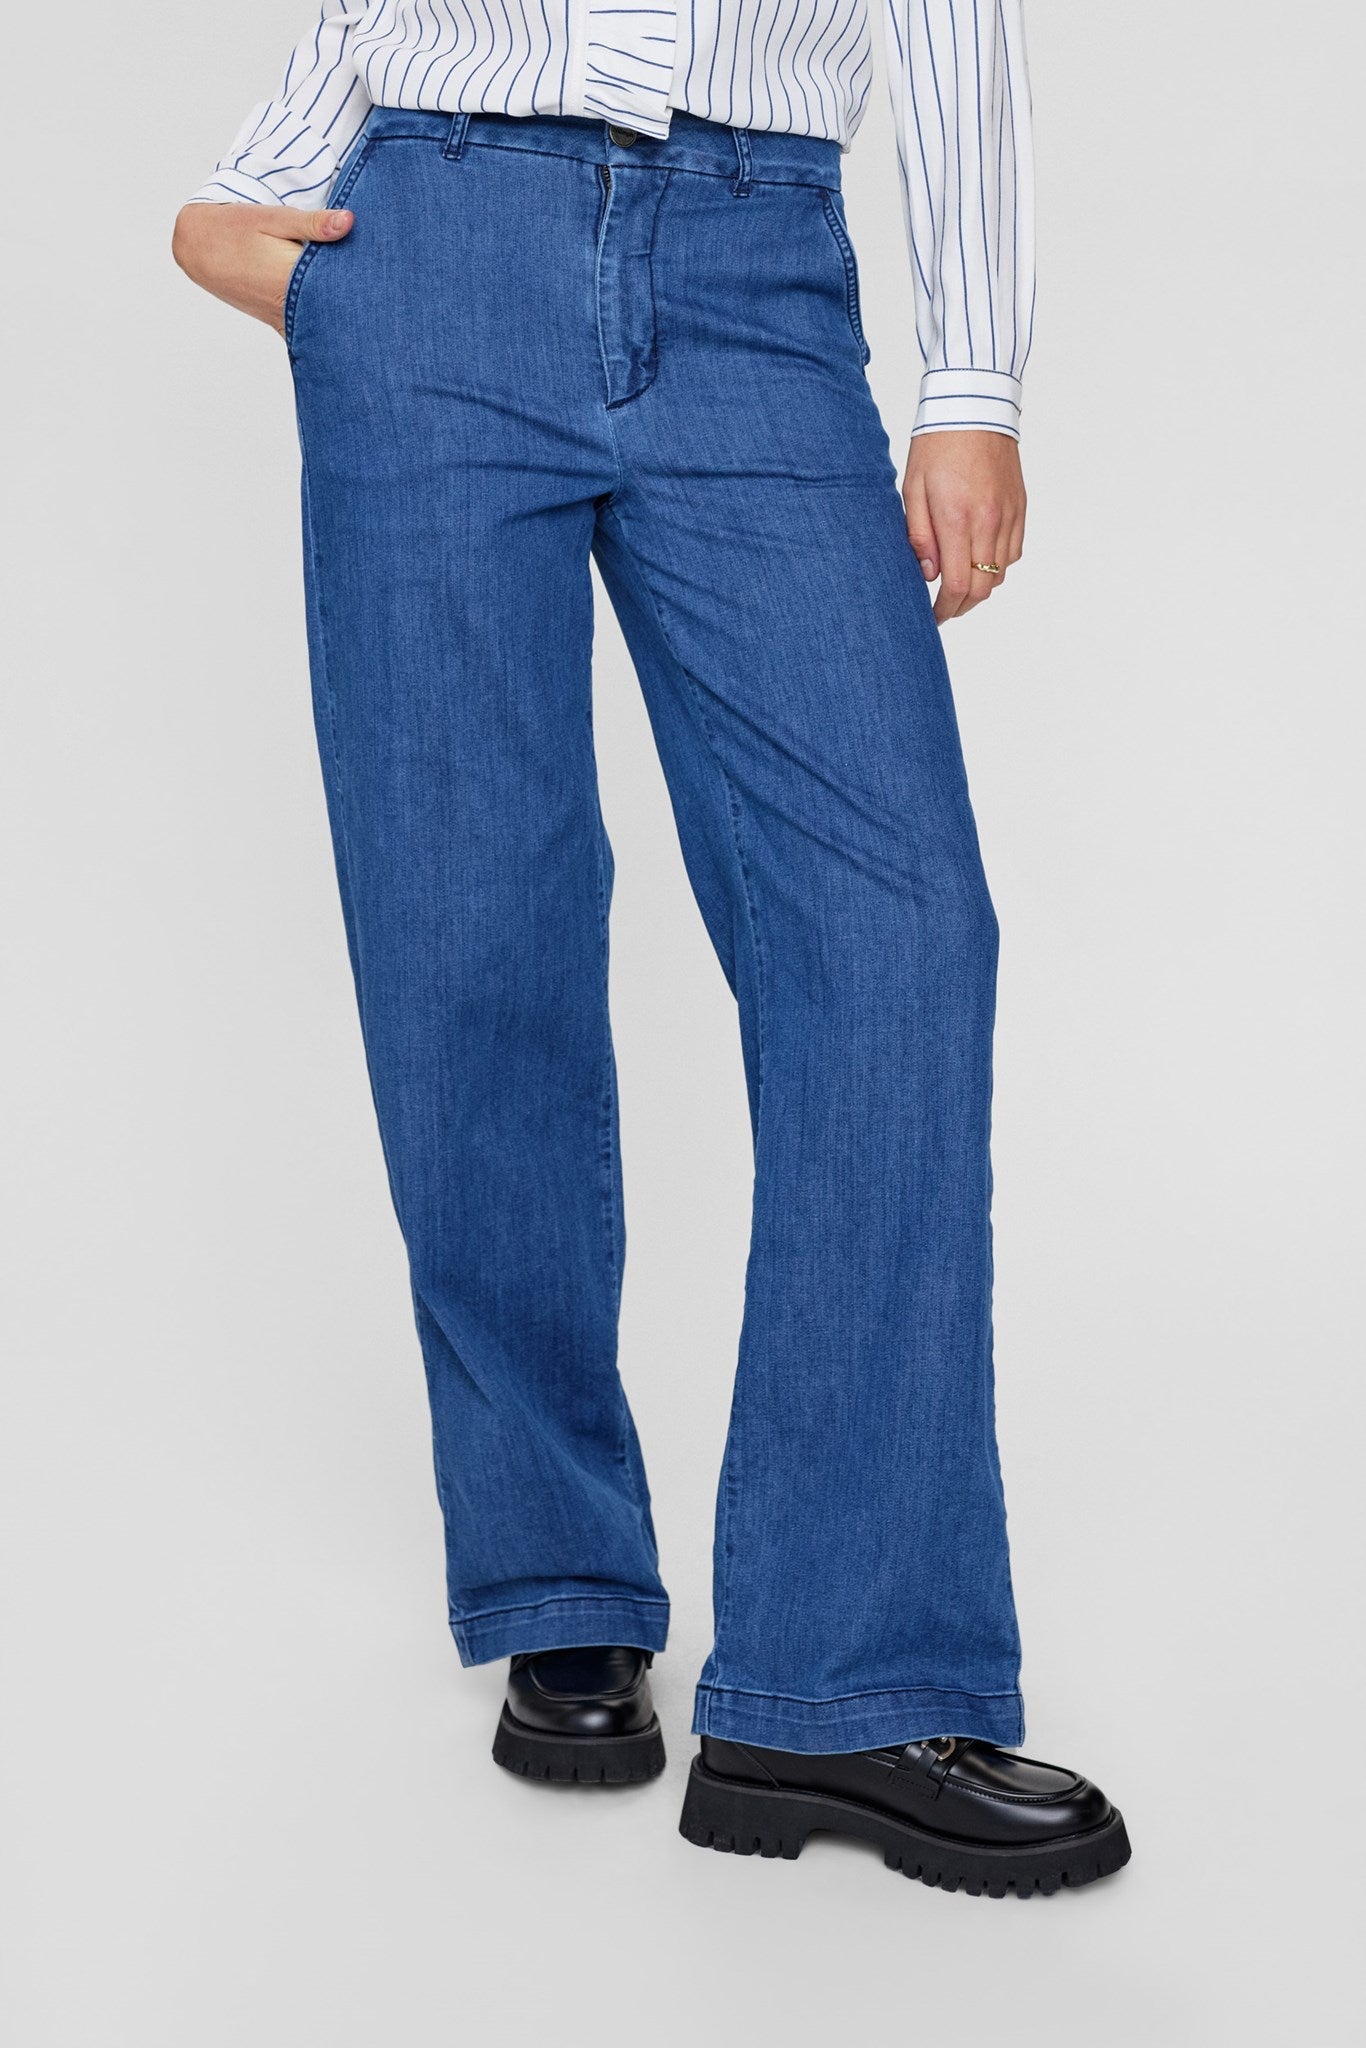 
                  
                    NUAMBER Medium Blue Denim Trousers
                  
                